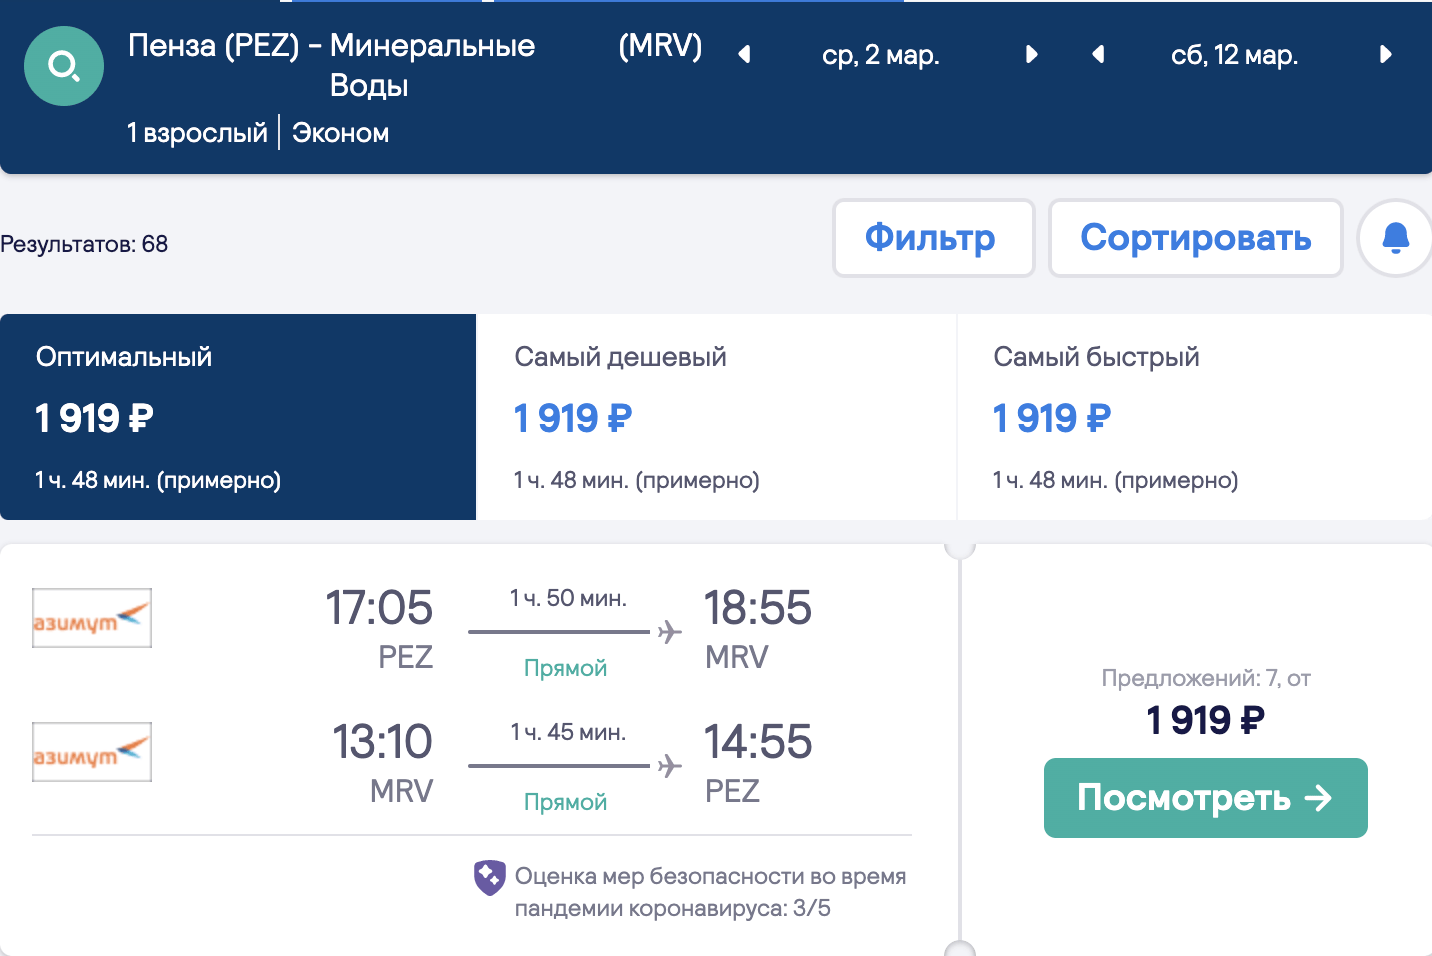 Duży wybór tanich lotów z regionów do Krasnodaru i Minvody od 1800₽ w obie strony